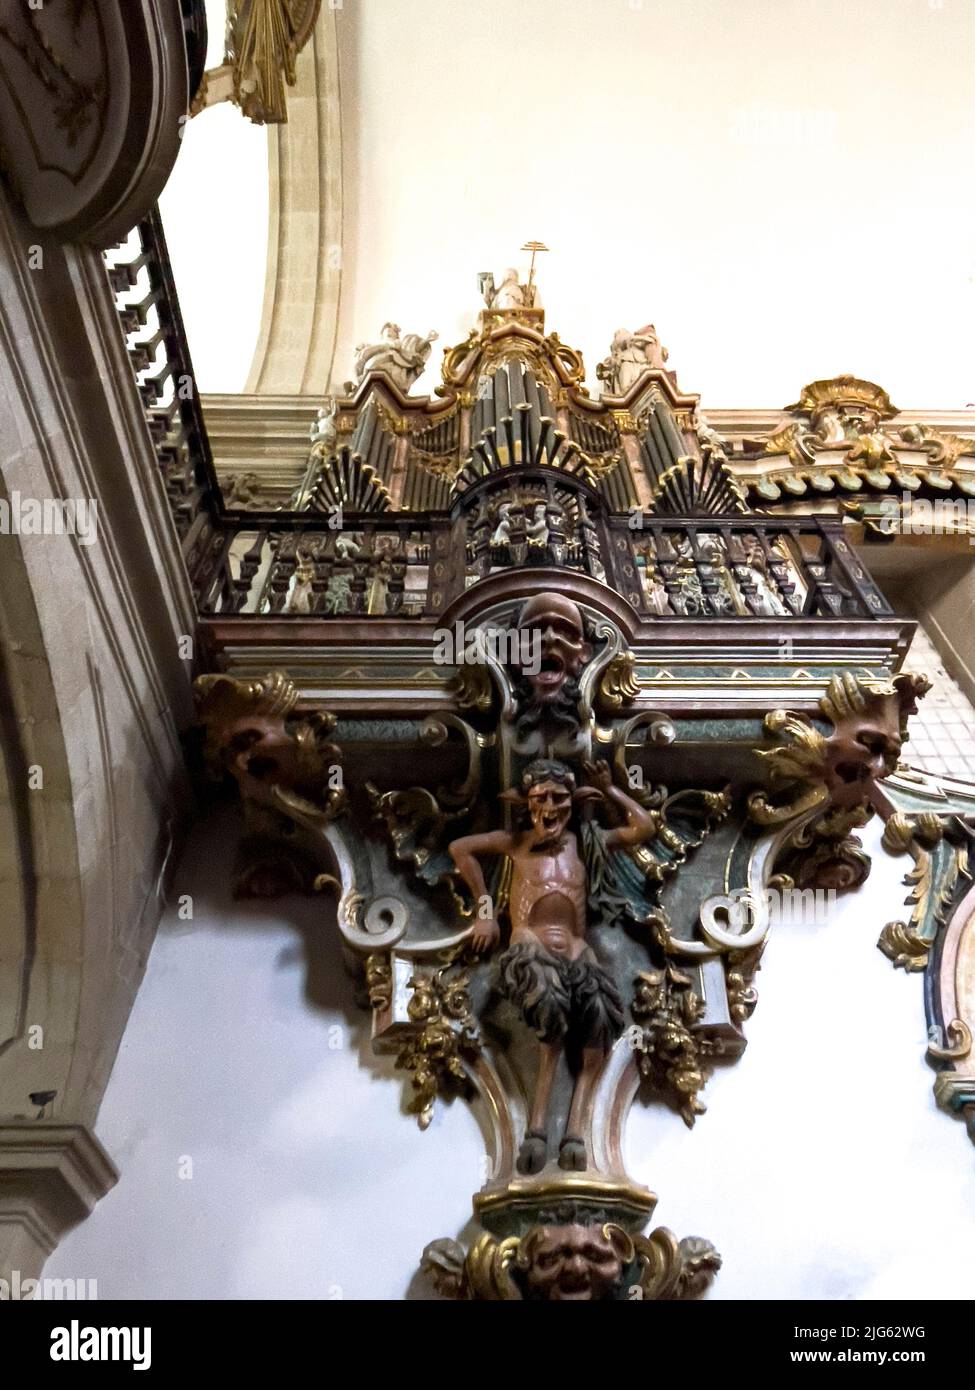 El órgano de la pipa del monasterio de San Miguel de Refojos (Sao Miguel de Refojos) fue construido en 1755 en estilo barroco para la Orden Benedictina, en la t Foto de stock